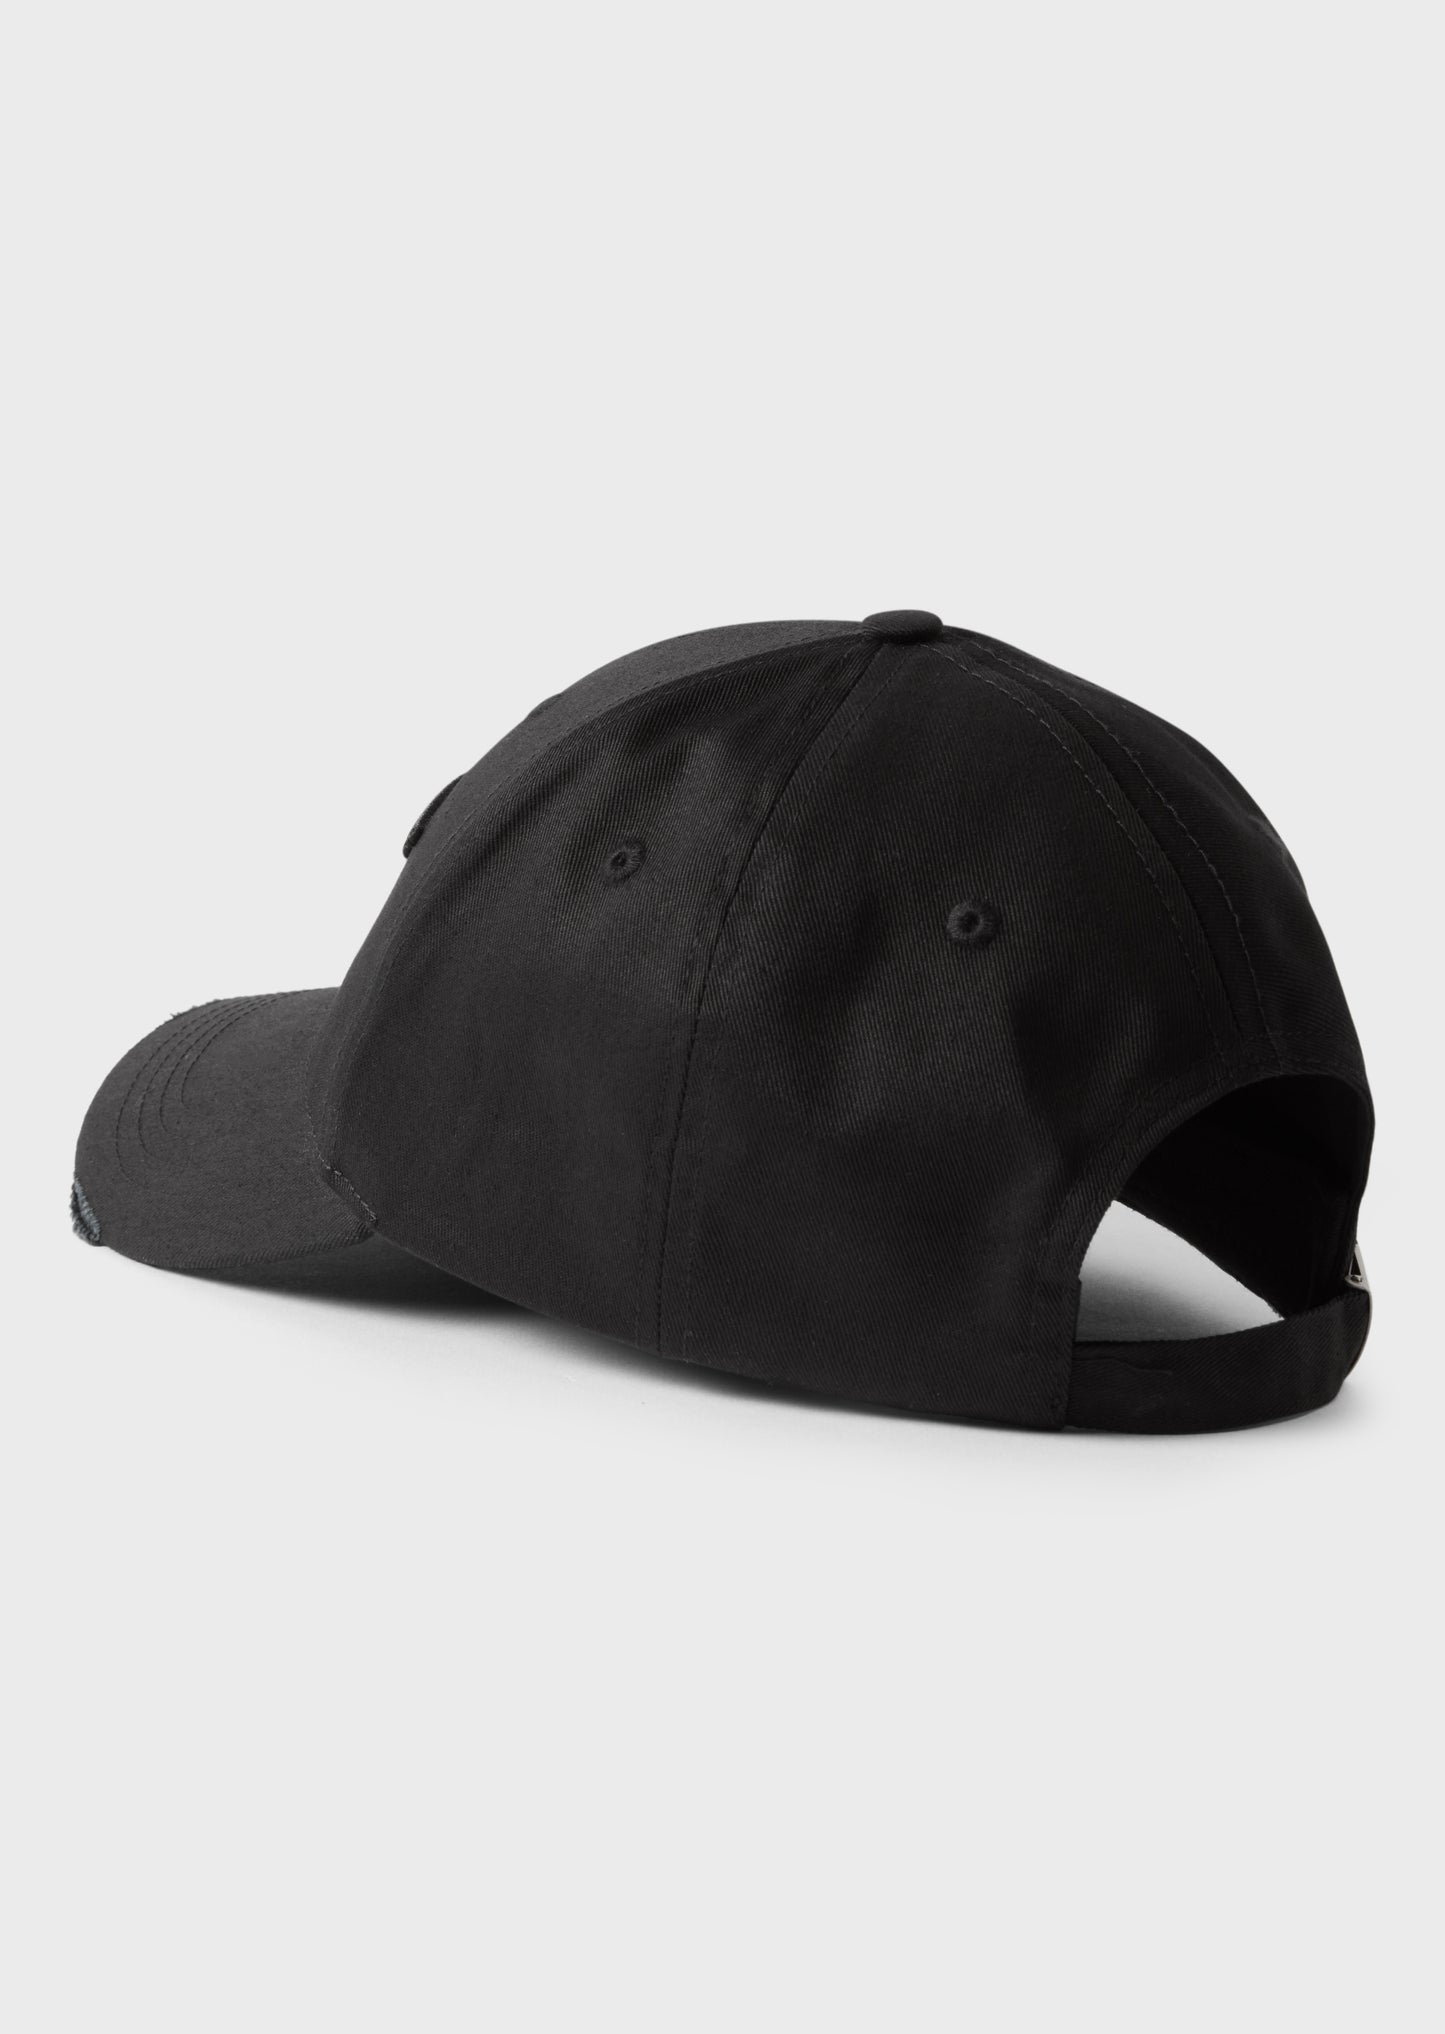 Drecks Black Cap